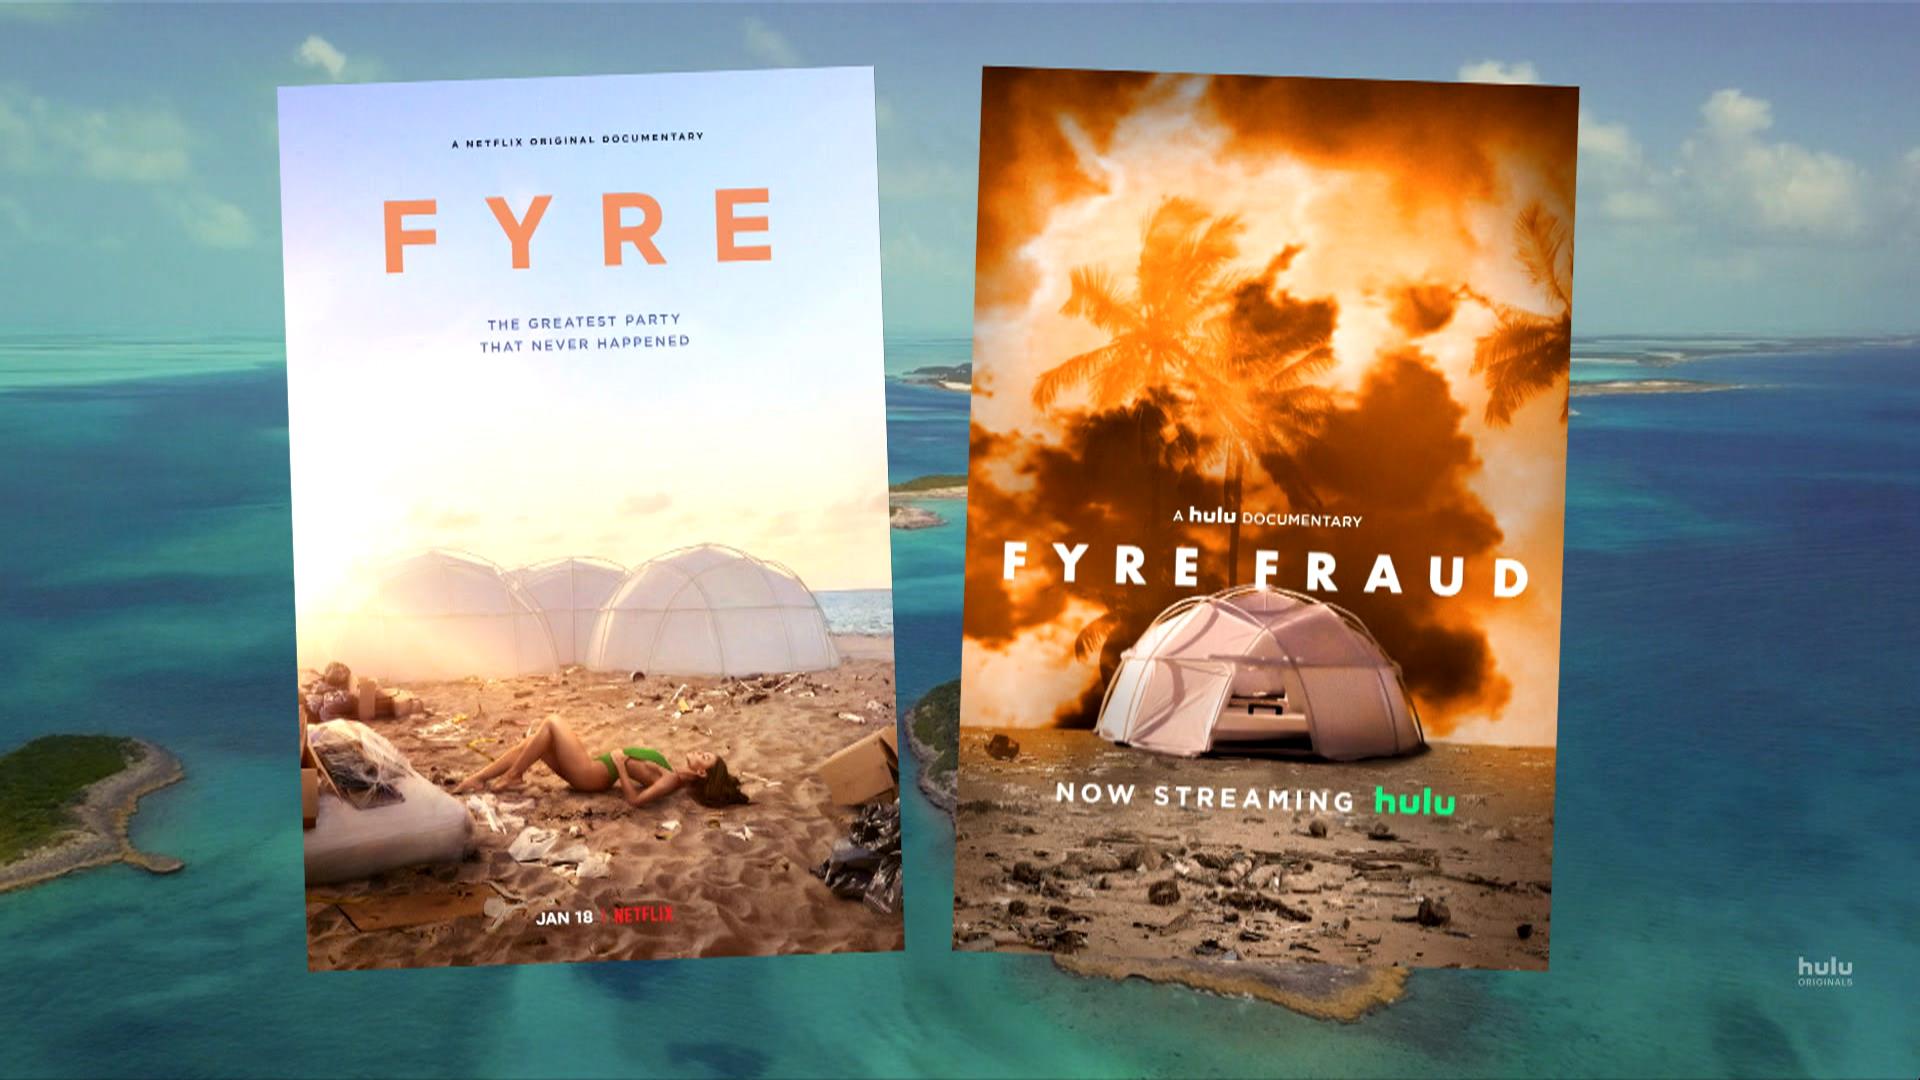 2 documentaries put Fyre Festival in limelight